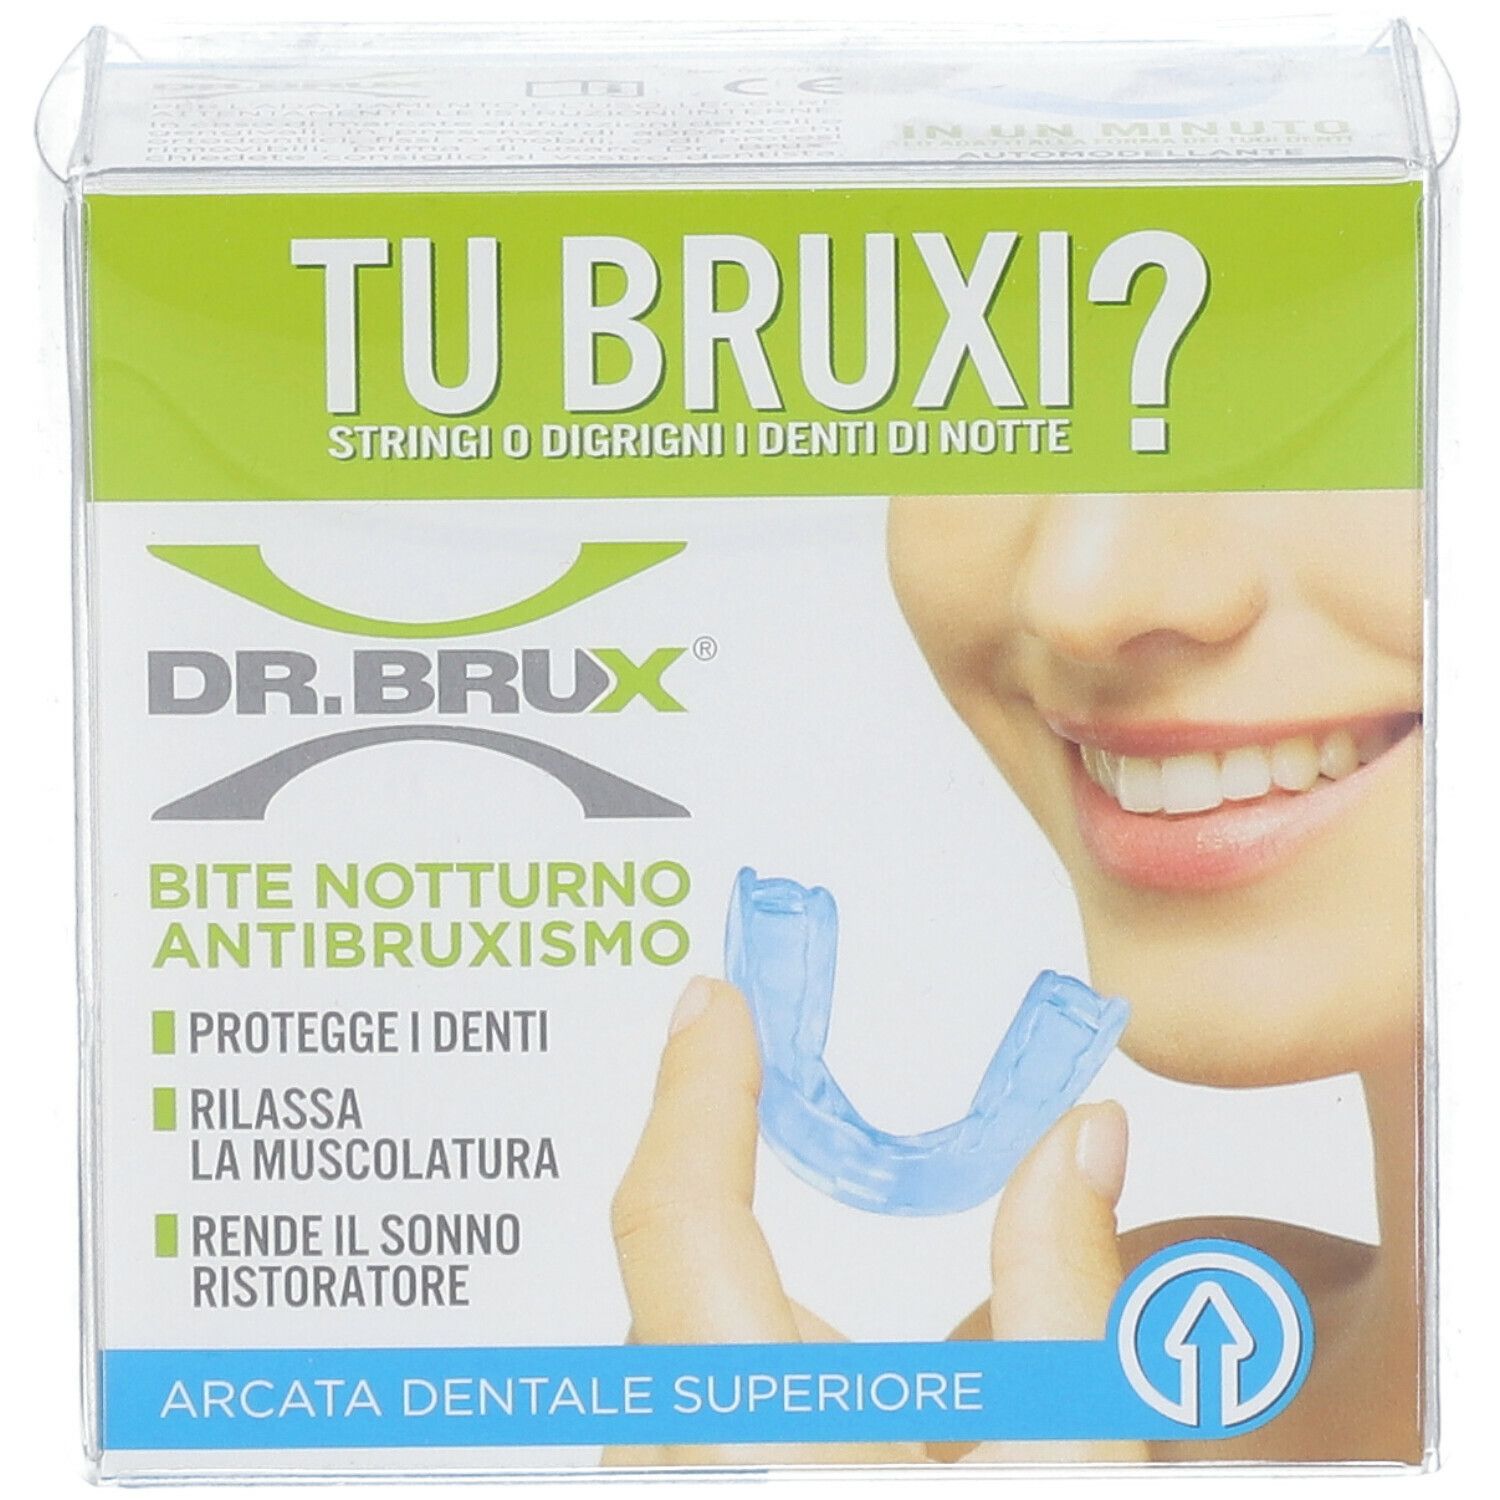 Dr. Brux® Bite Antibruxismo